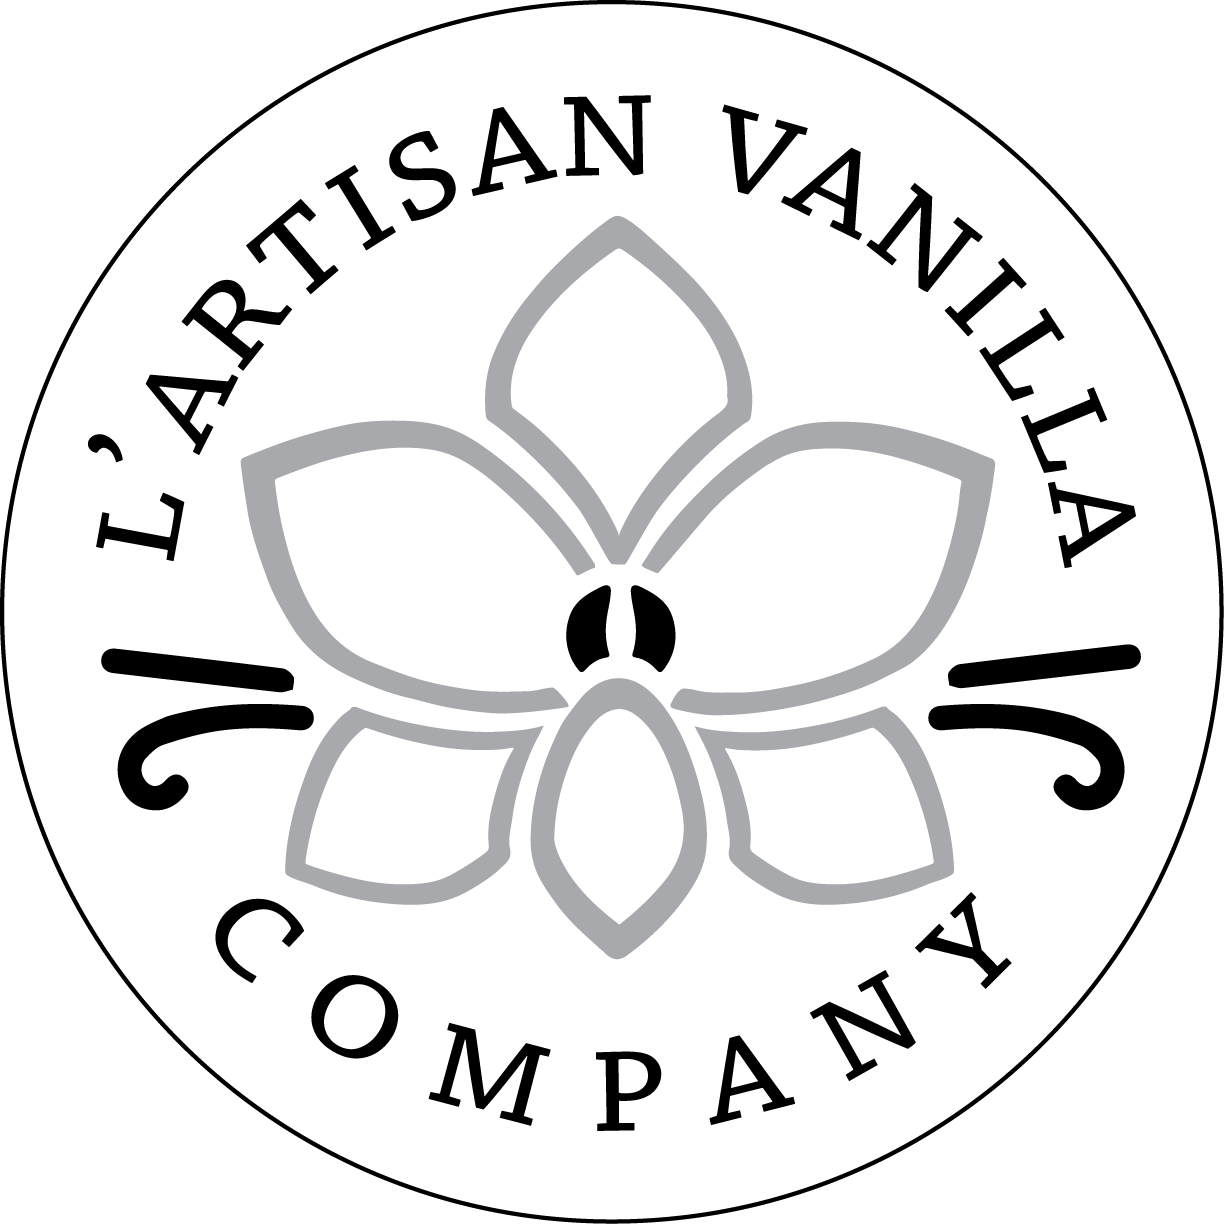 L'Artisan Vanilla Company